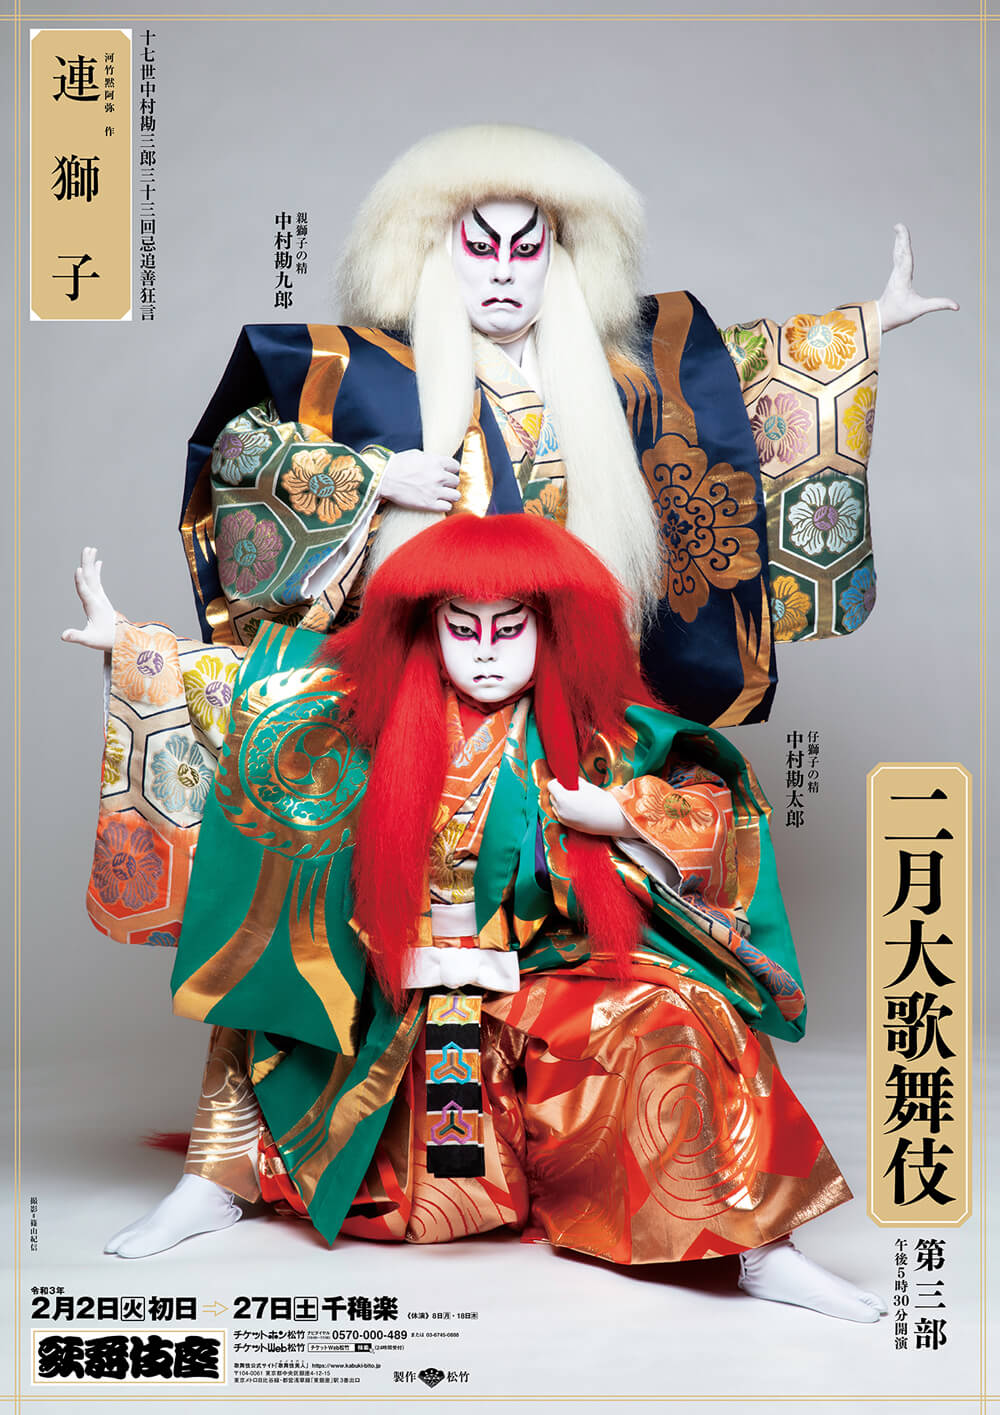 楽天市場 歌舞伎関連の商品を数多く取り揃えた 歌舞伎座直営のショップです かお店 楽天市場店 トップページ